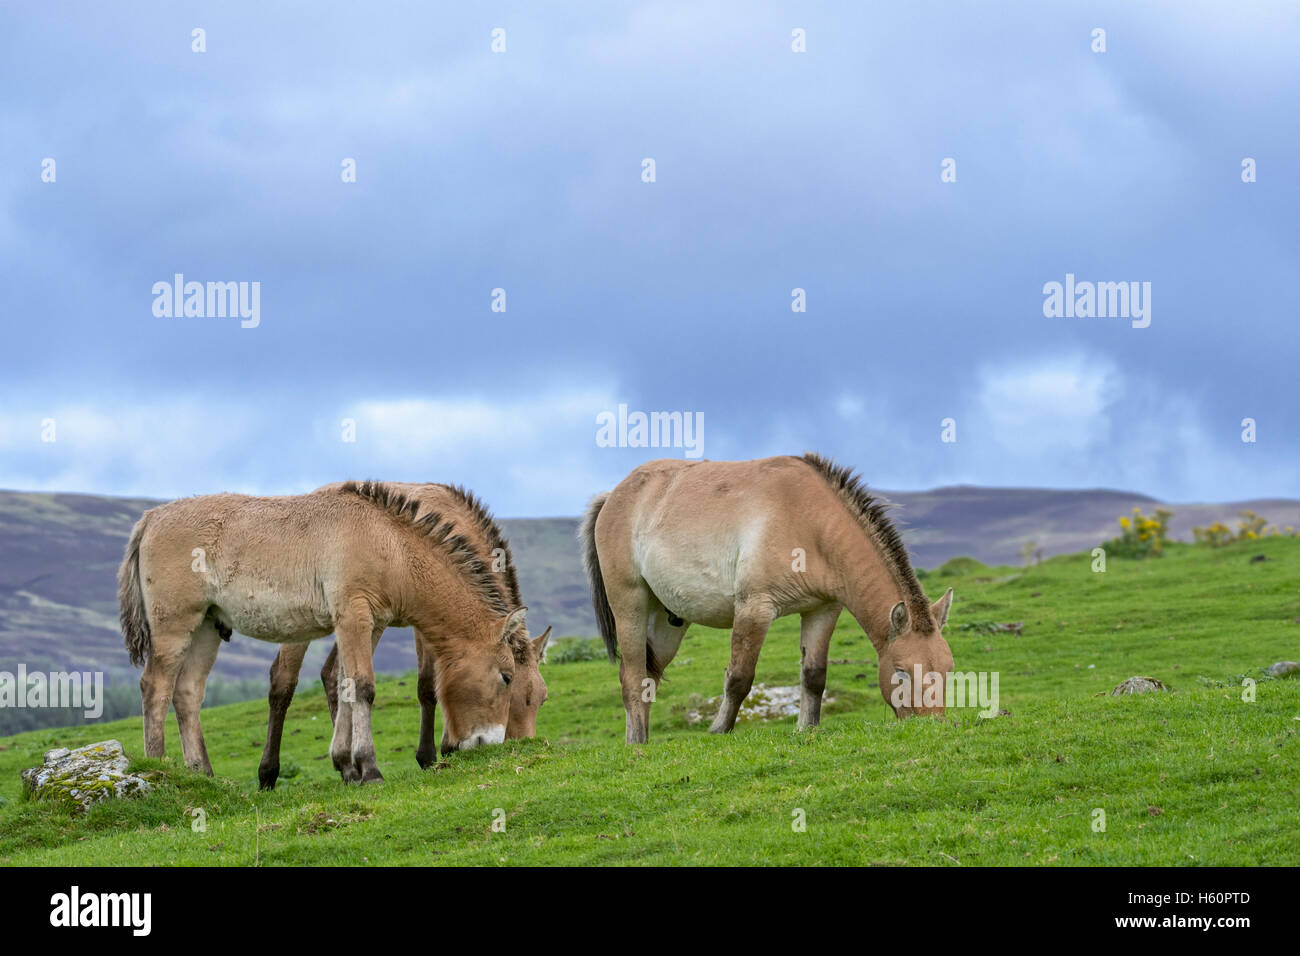 Cavalli di Przewalski (Equus ferus przewalskii) nativa per le steppe della Mongolia, in Asia centrale che pascolano nella prateria Foto Stock